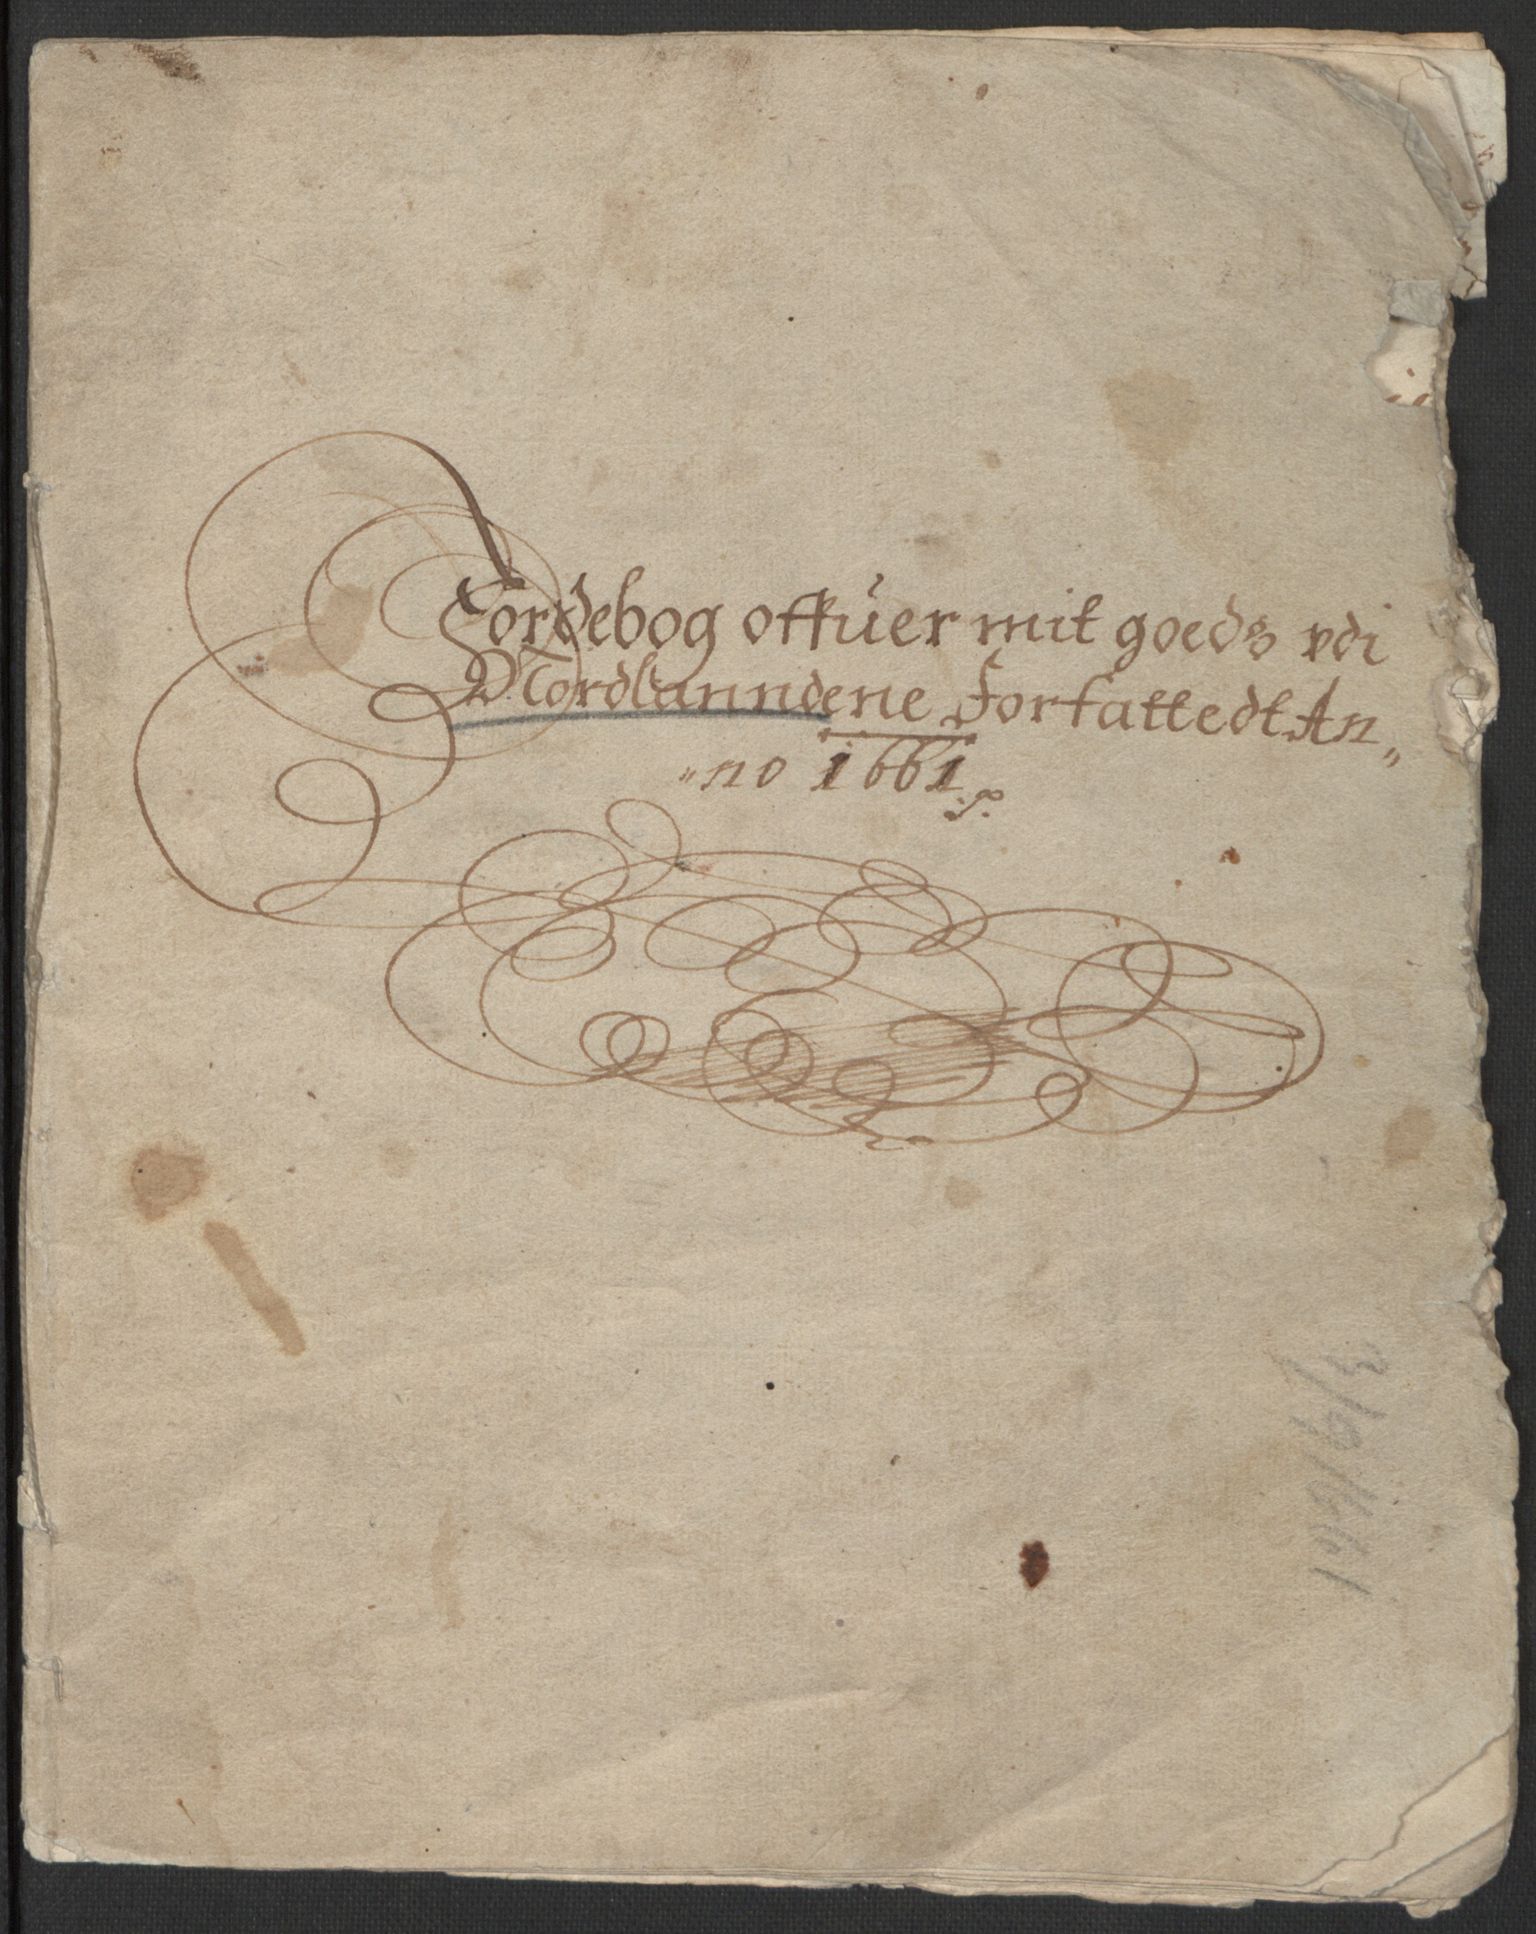 Rentekammeret inntil 1814, Realistisk ordnet avdeling, RA/EA-4070/L/L0030/0003: Nordland lagdømme: / Preben von Ahnens jordebok over hans gods i Nordlandene, 1661